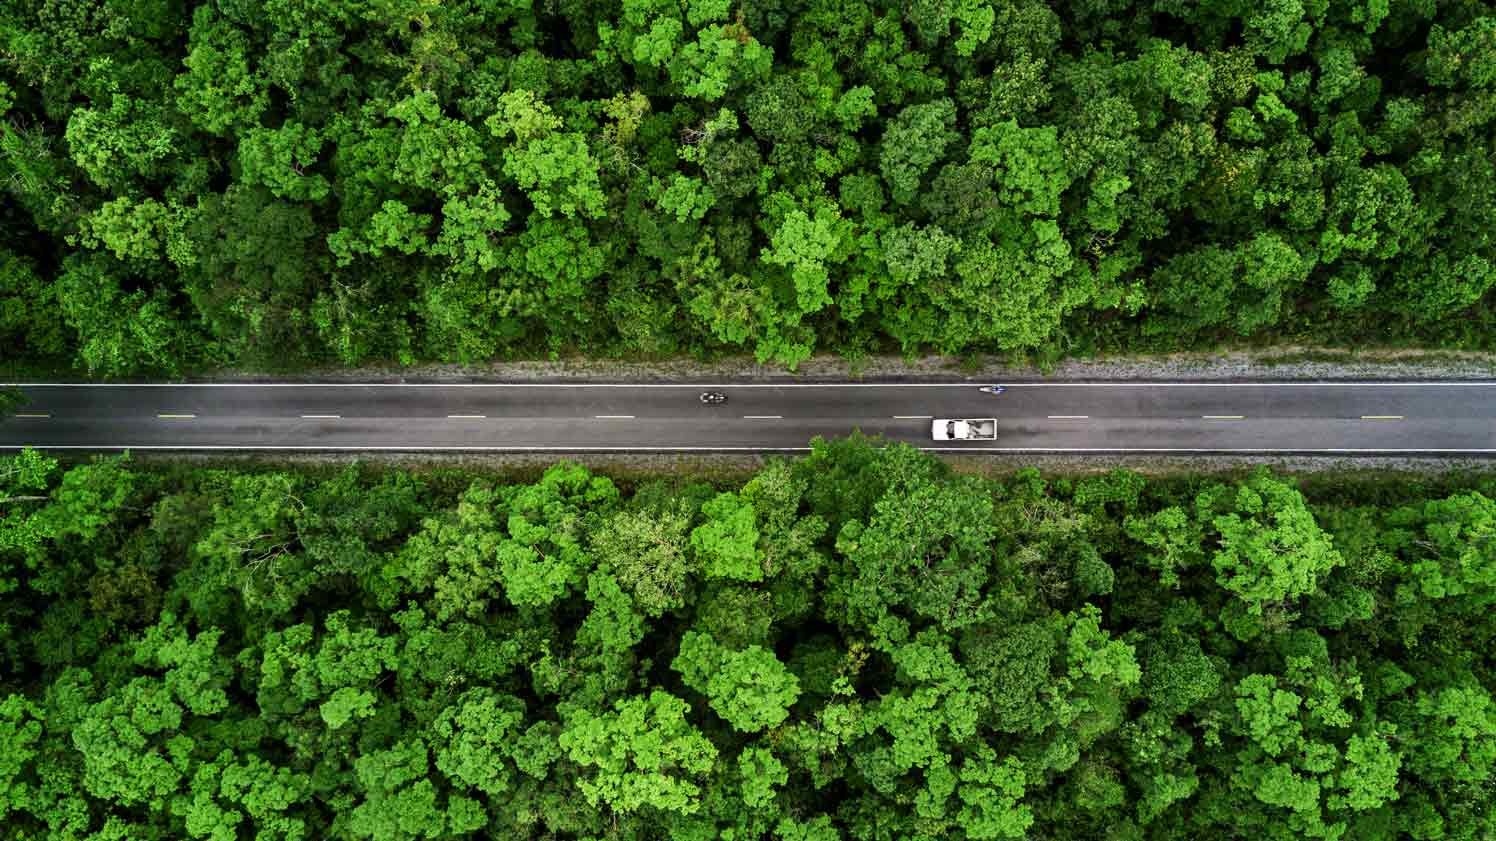 Green fleet vehicle driving through a forest